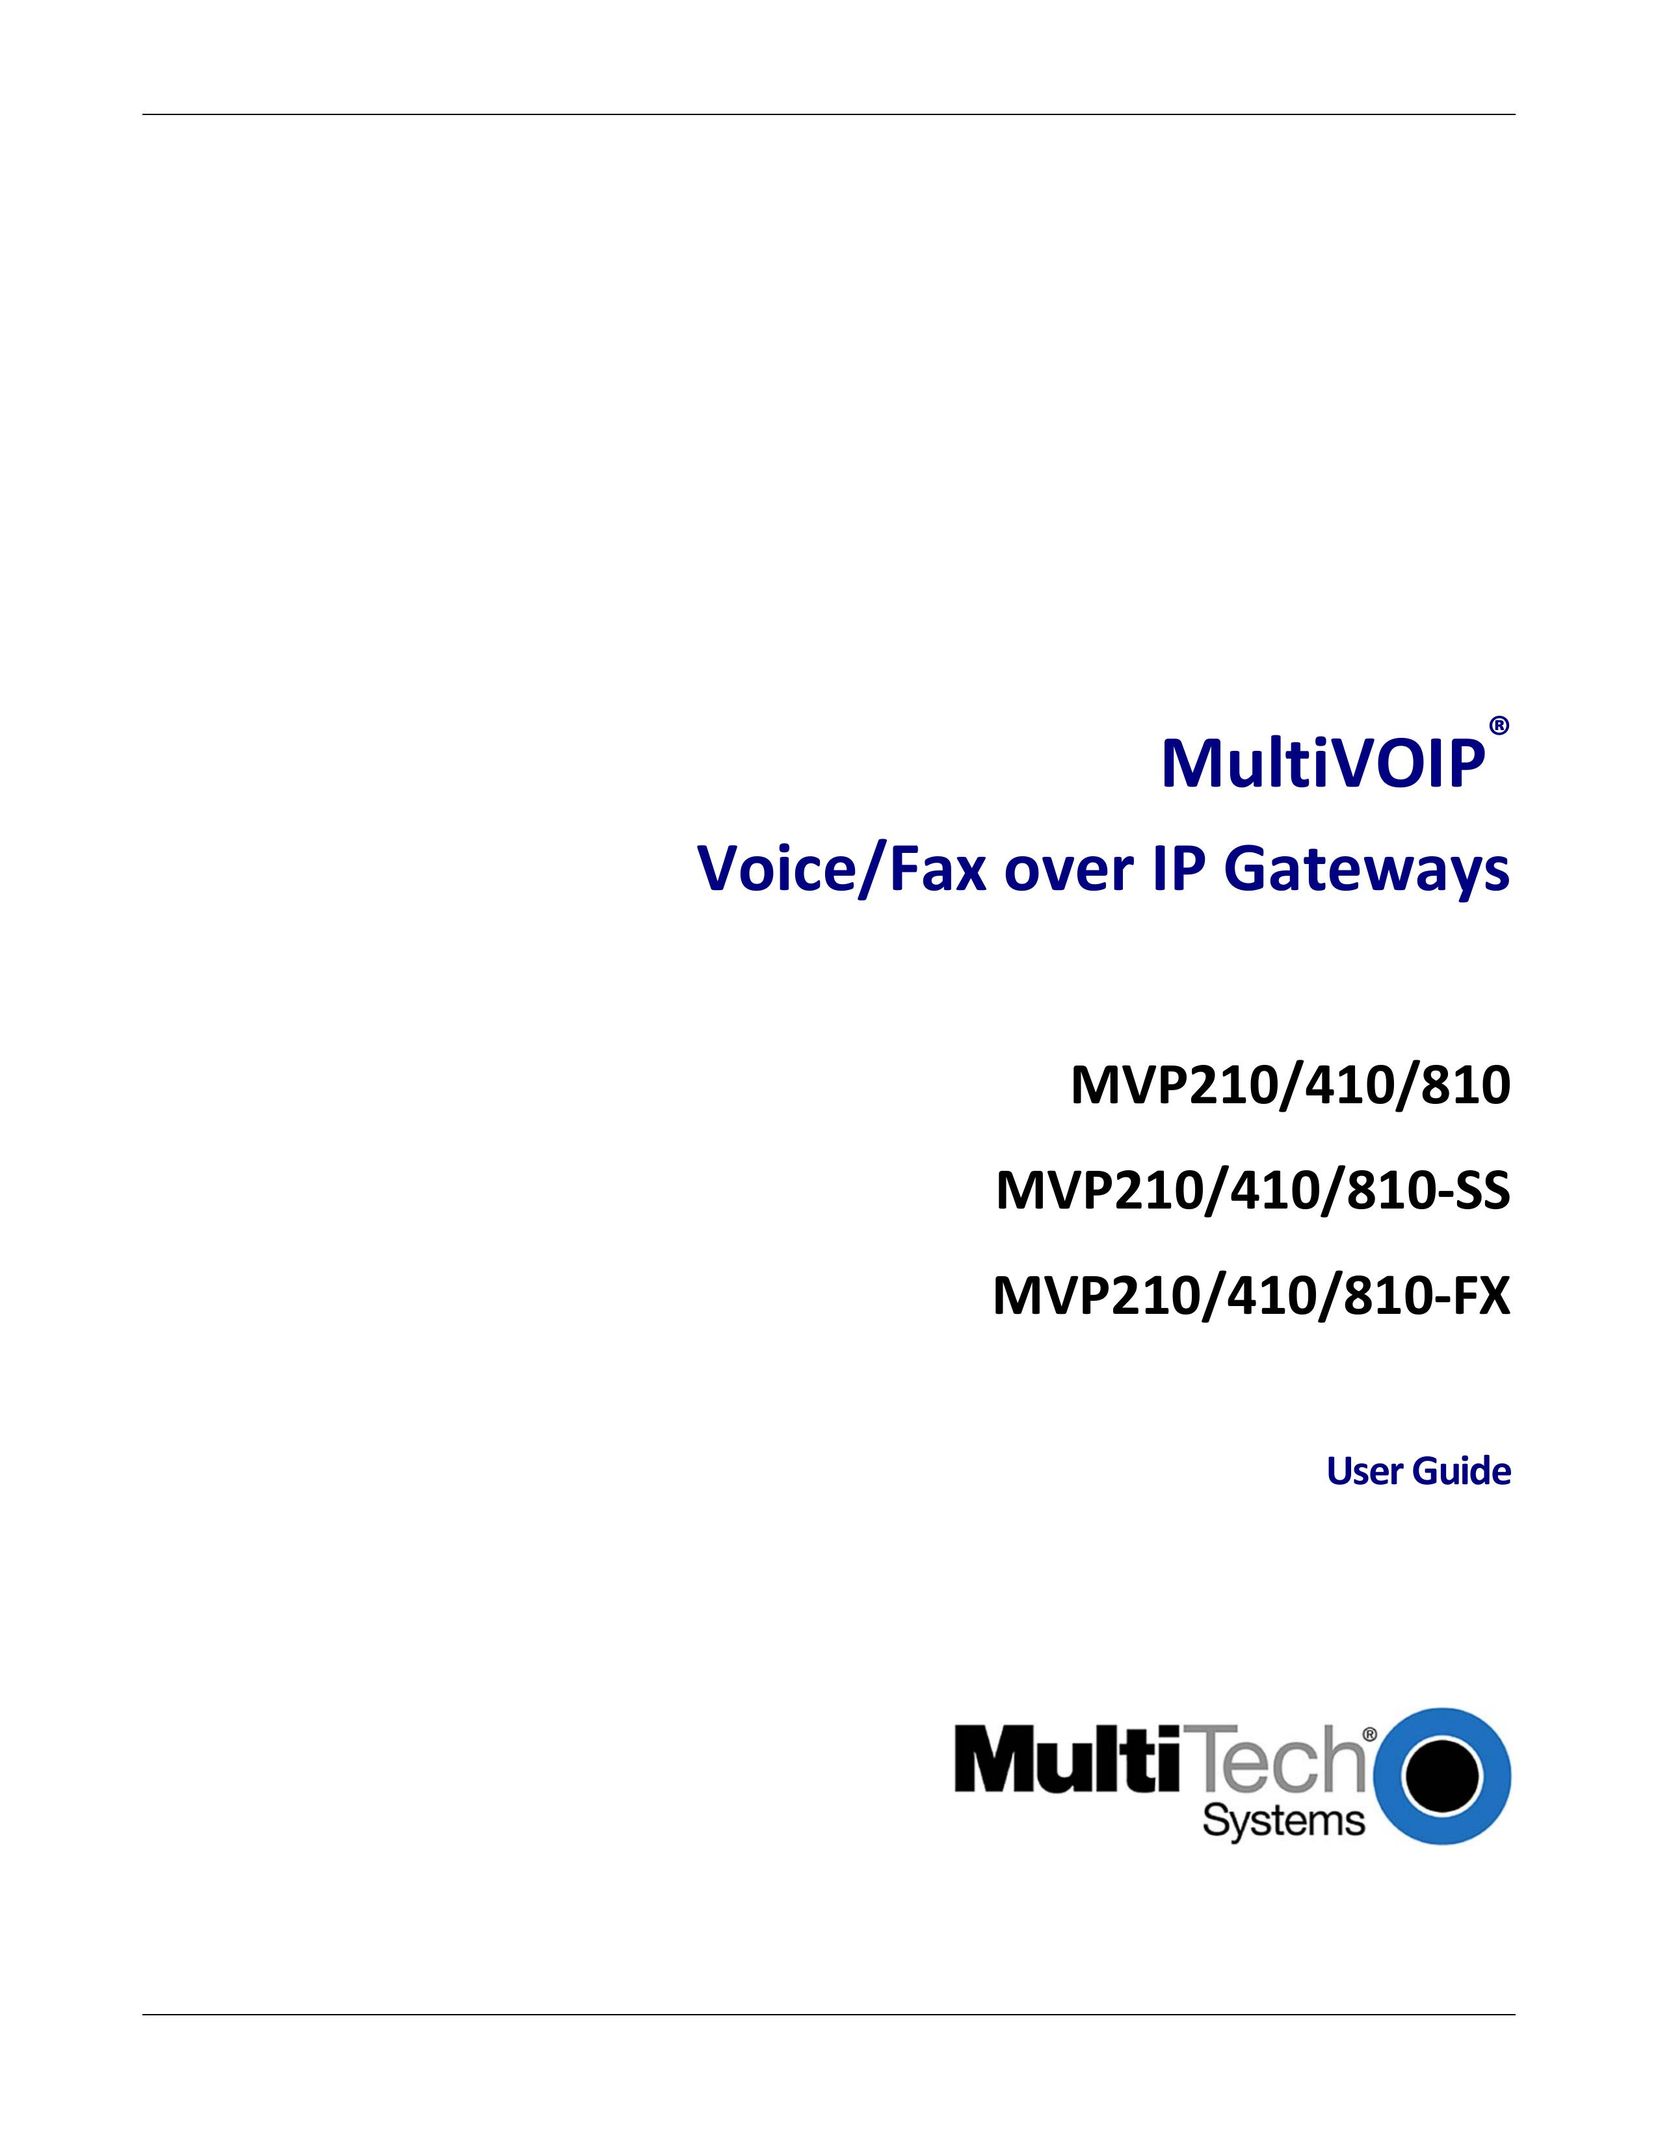 Multitech MVP210 Fax Machine User Manual